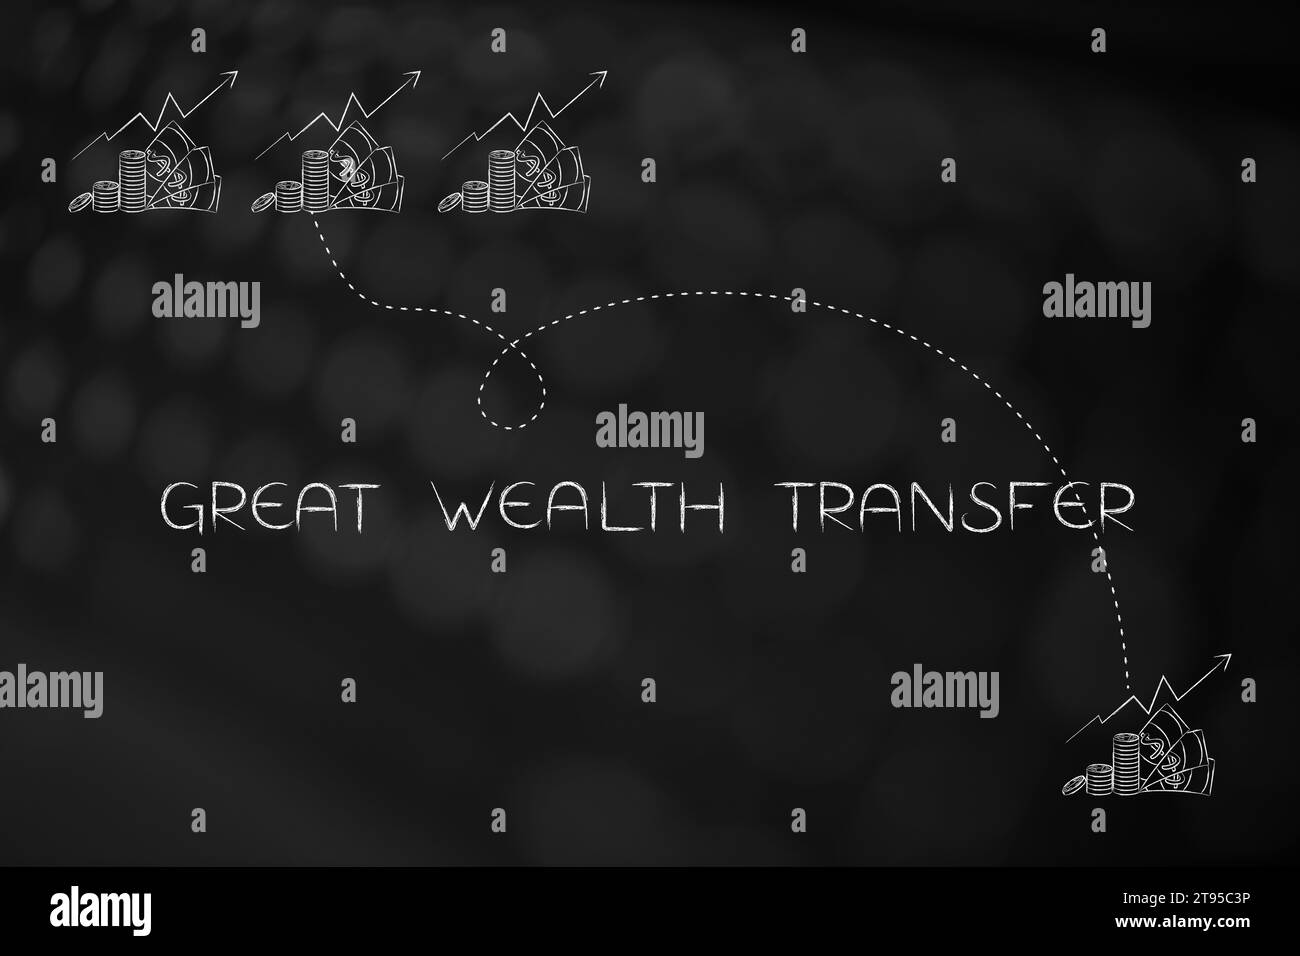 grande image conceptuelle de transfert de richesse, texte avec des icônes représentant beaucoup de richesse en train d'être partagé Banque D'Images